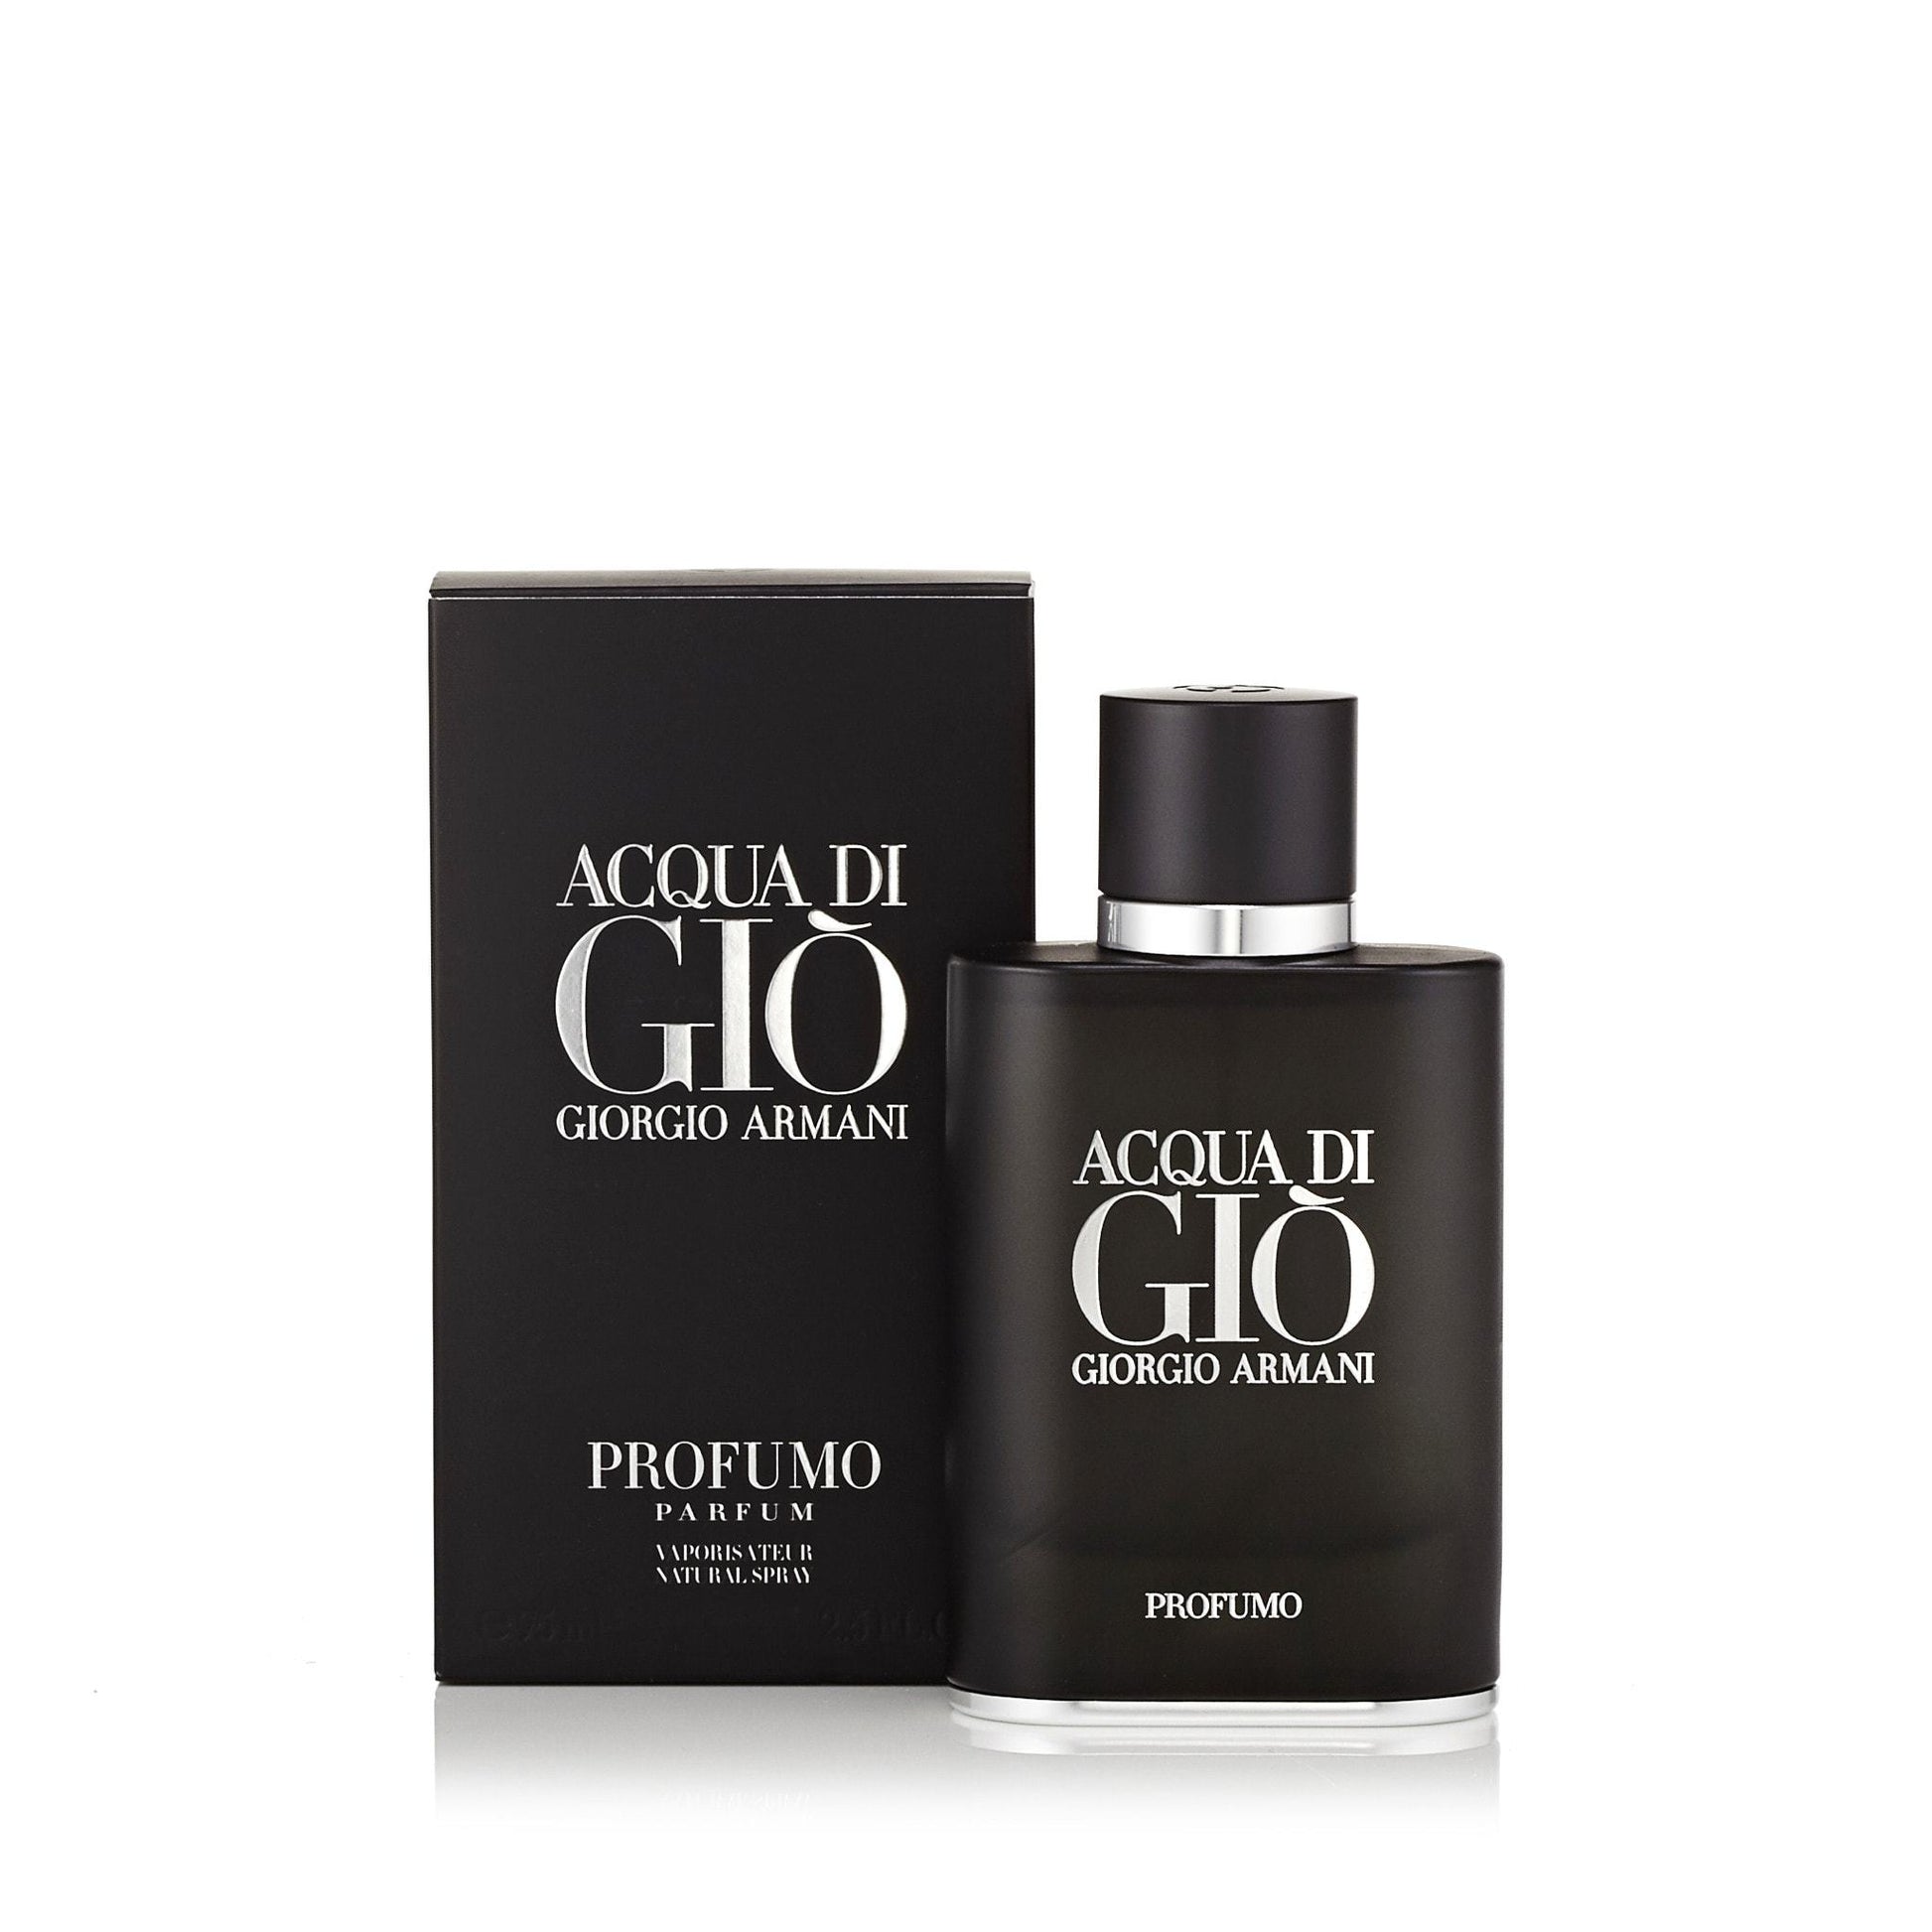 Acqua Di Gio Profumo Parfum Spray for Men by Giorgio Armani, Product image 1